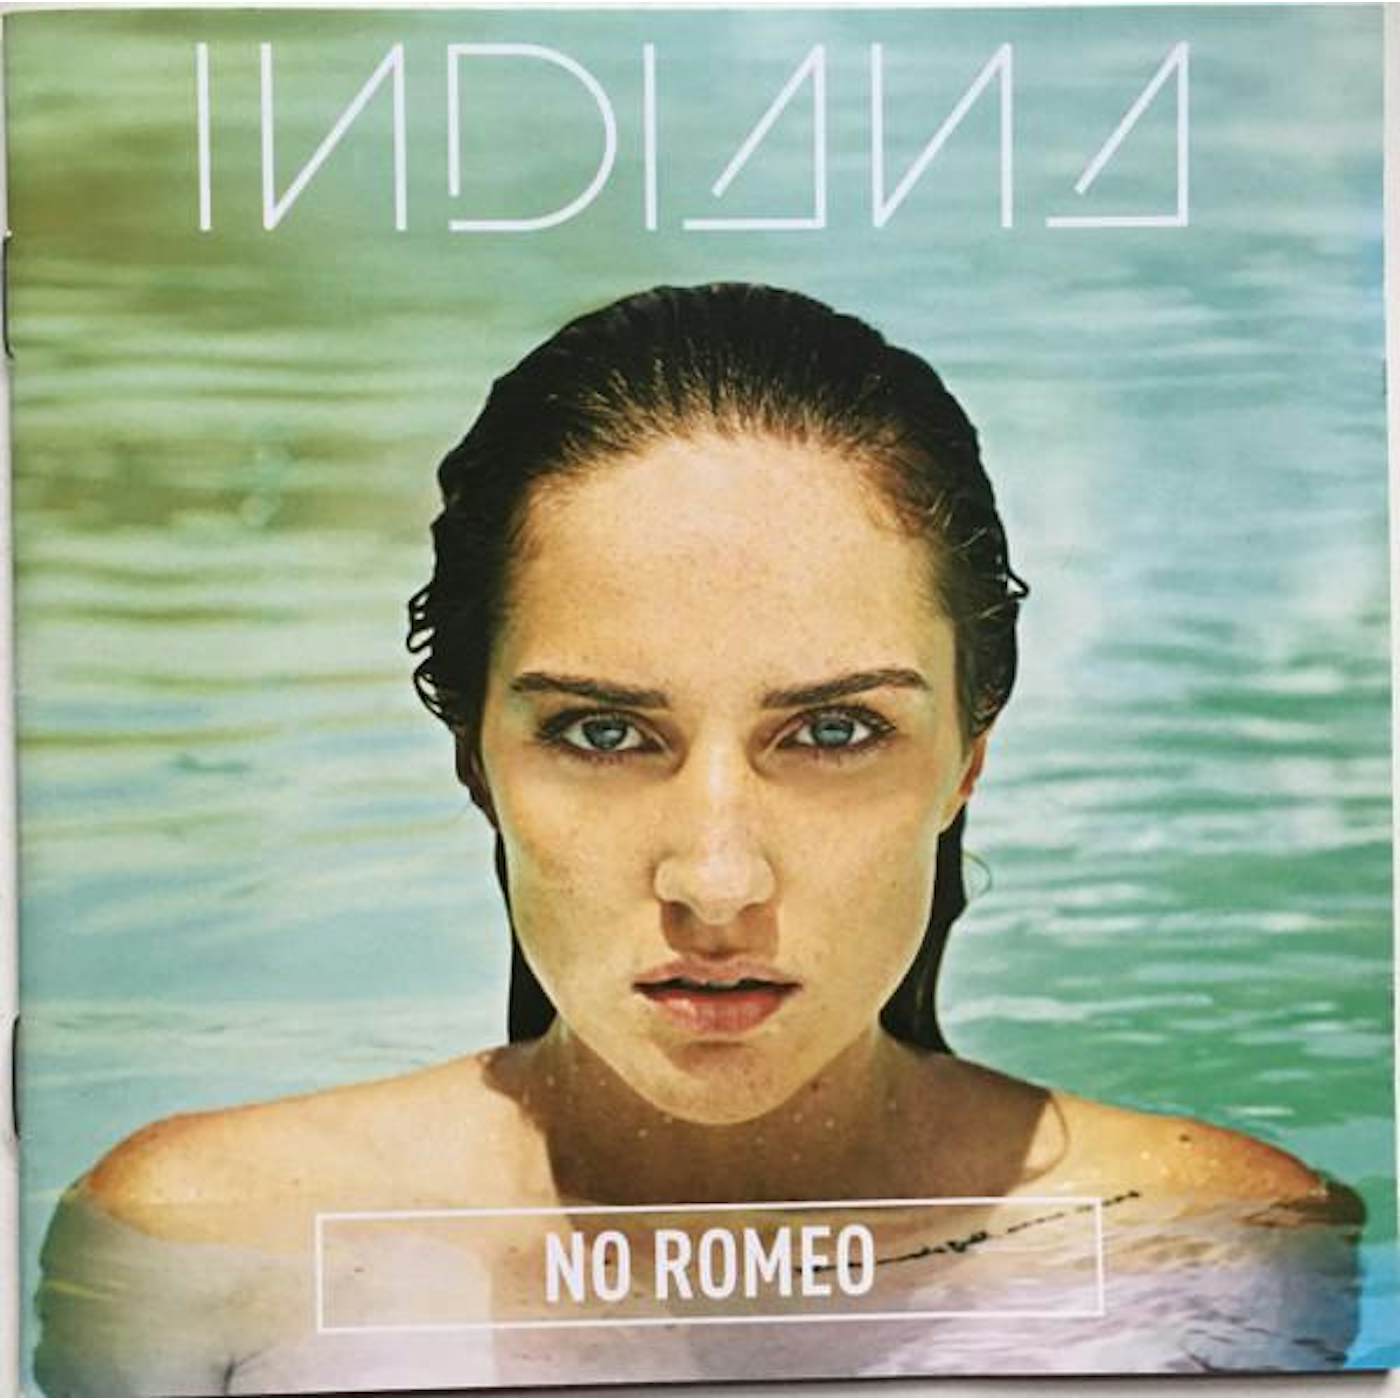 Indiana NO ROMEO CD